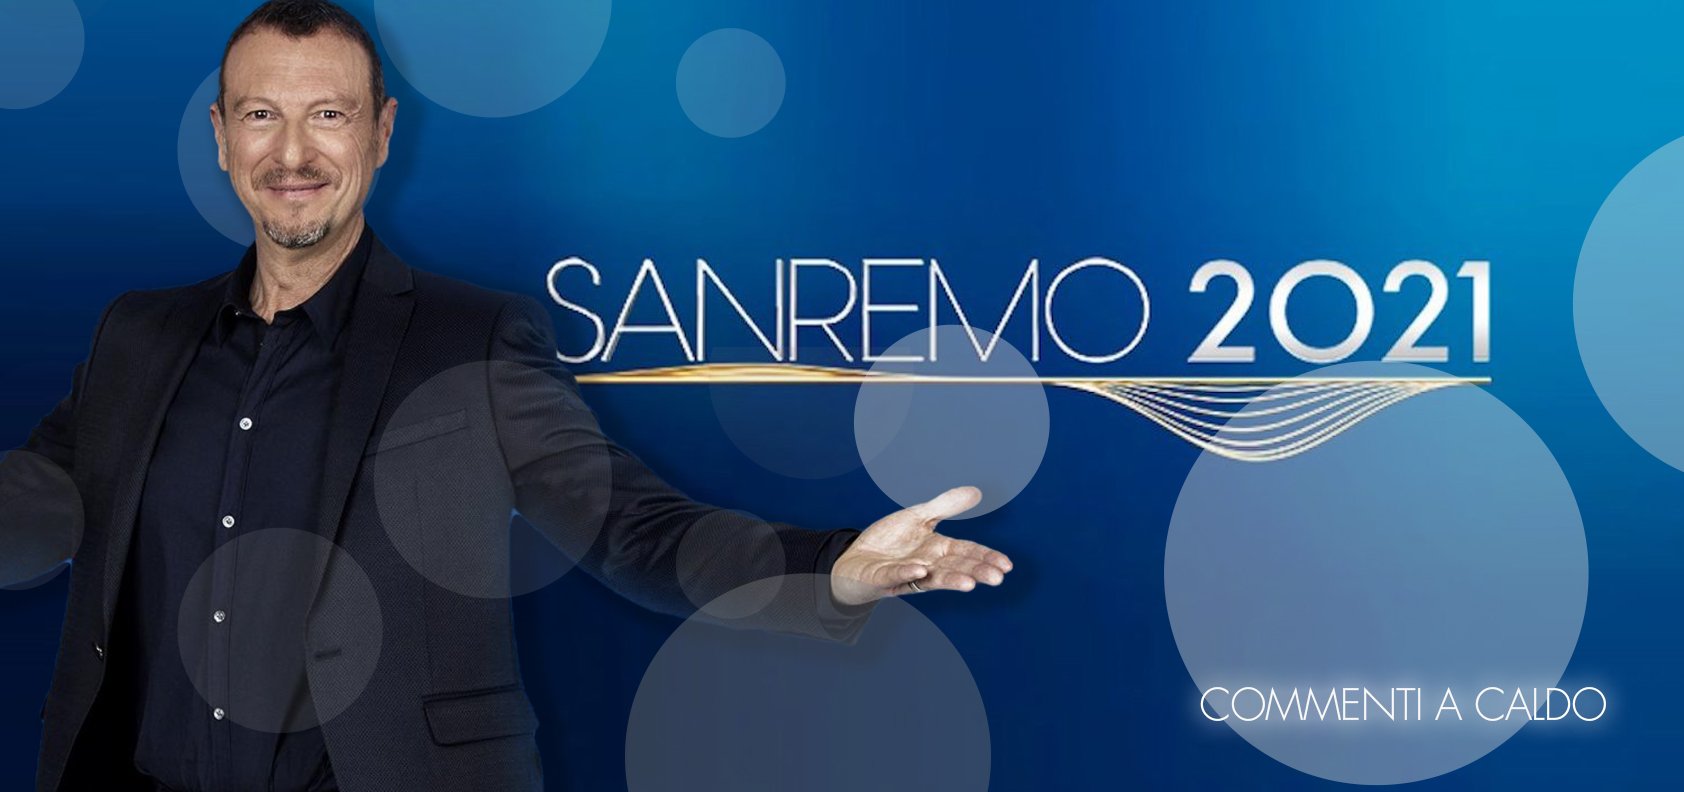 Sanremo 2021, la prima serata: commenti a caldo